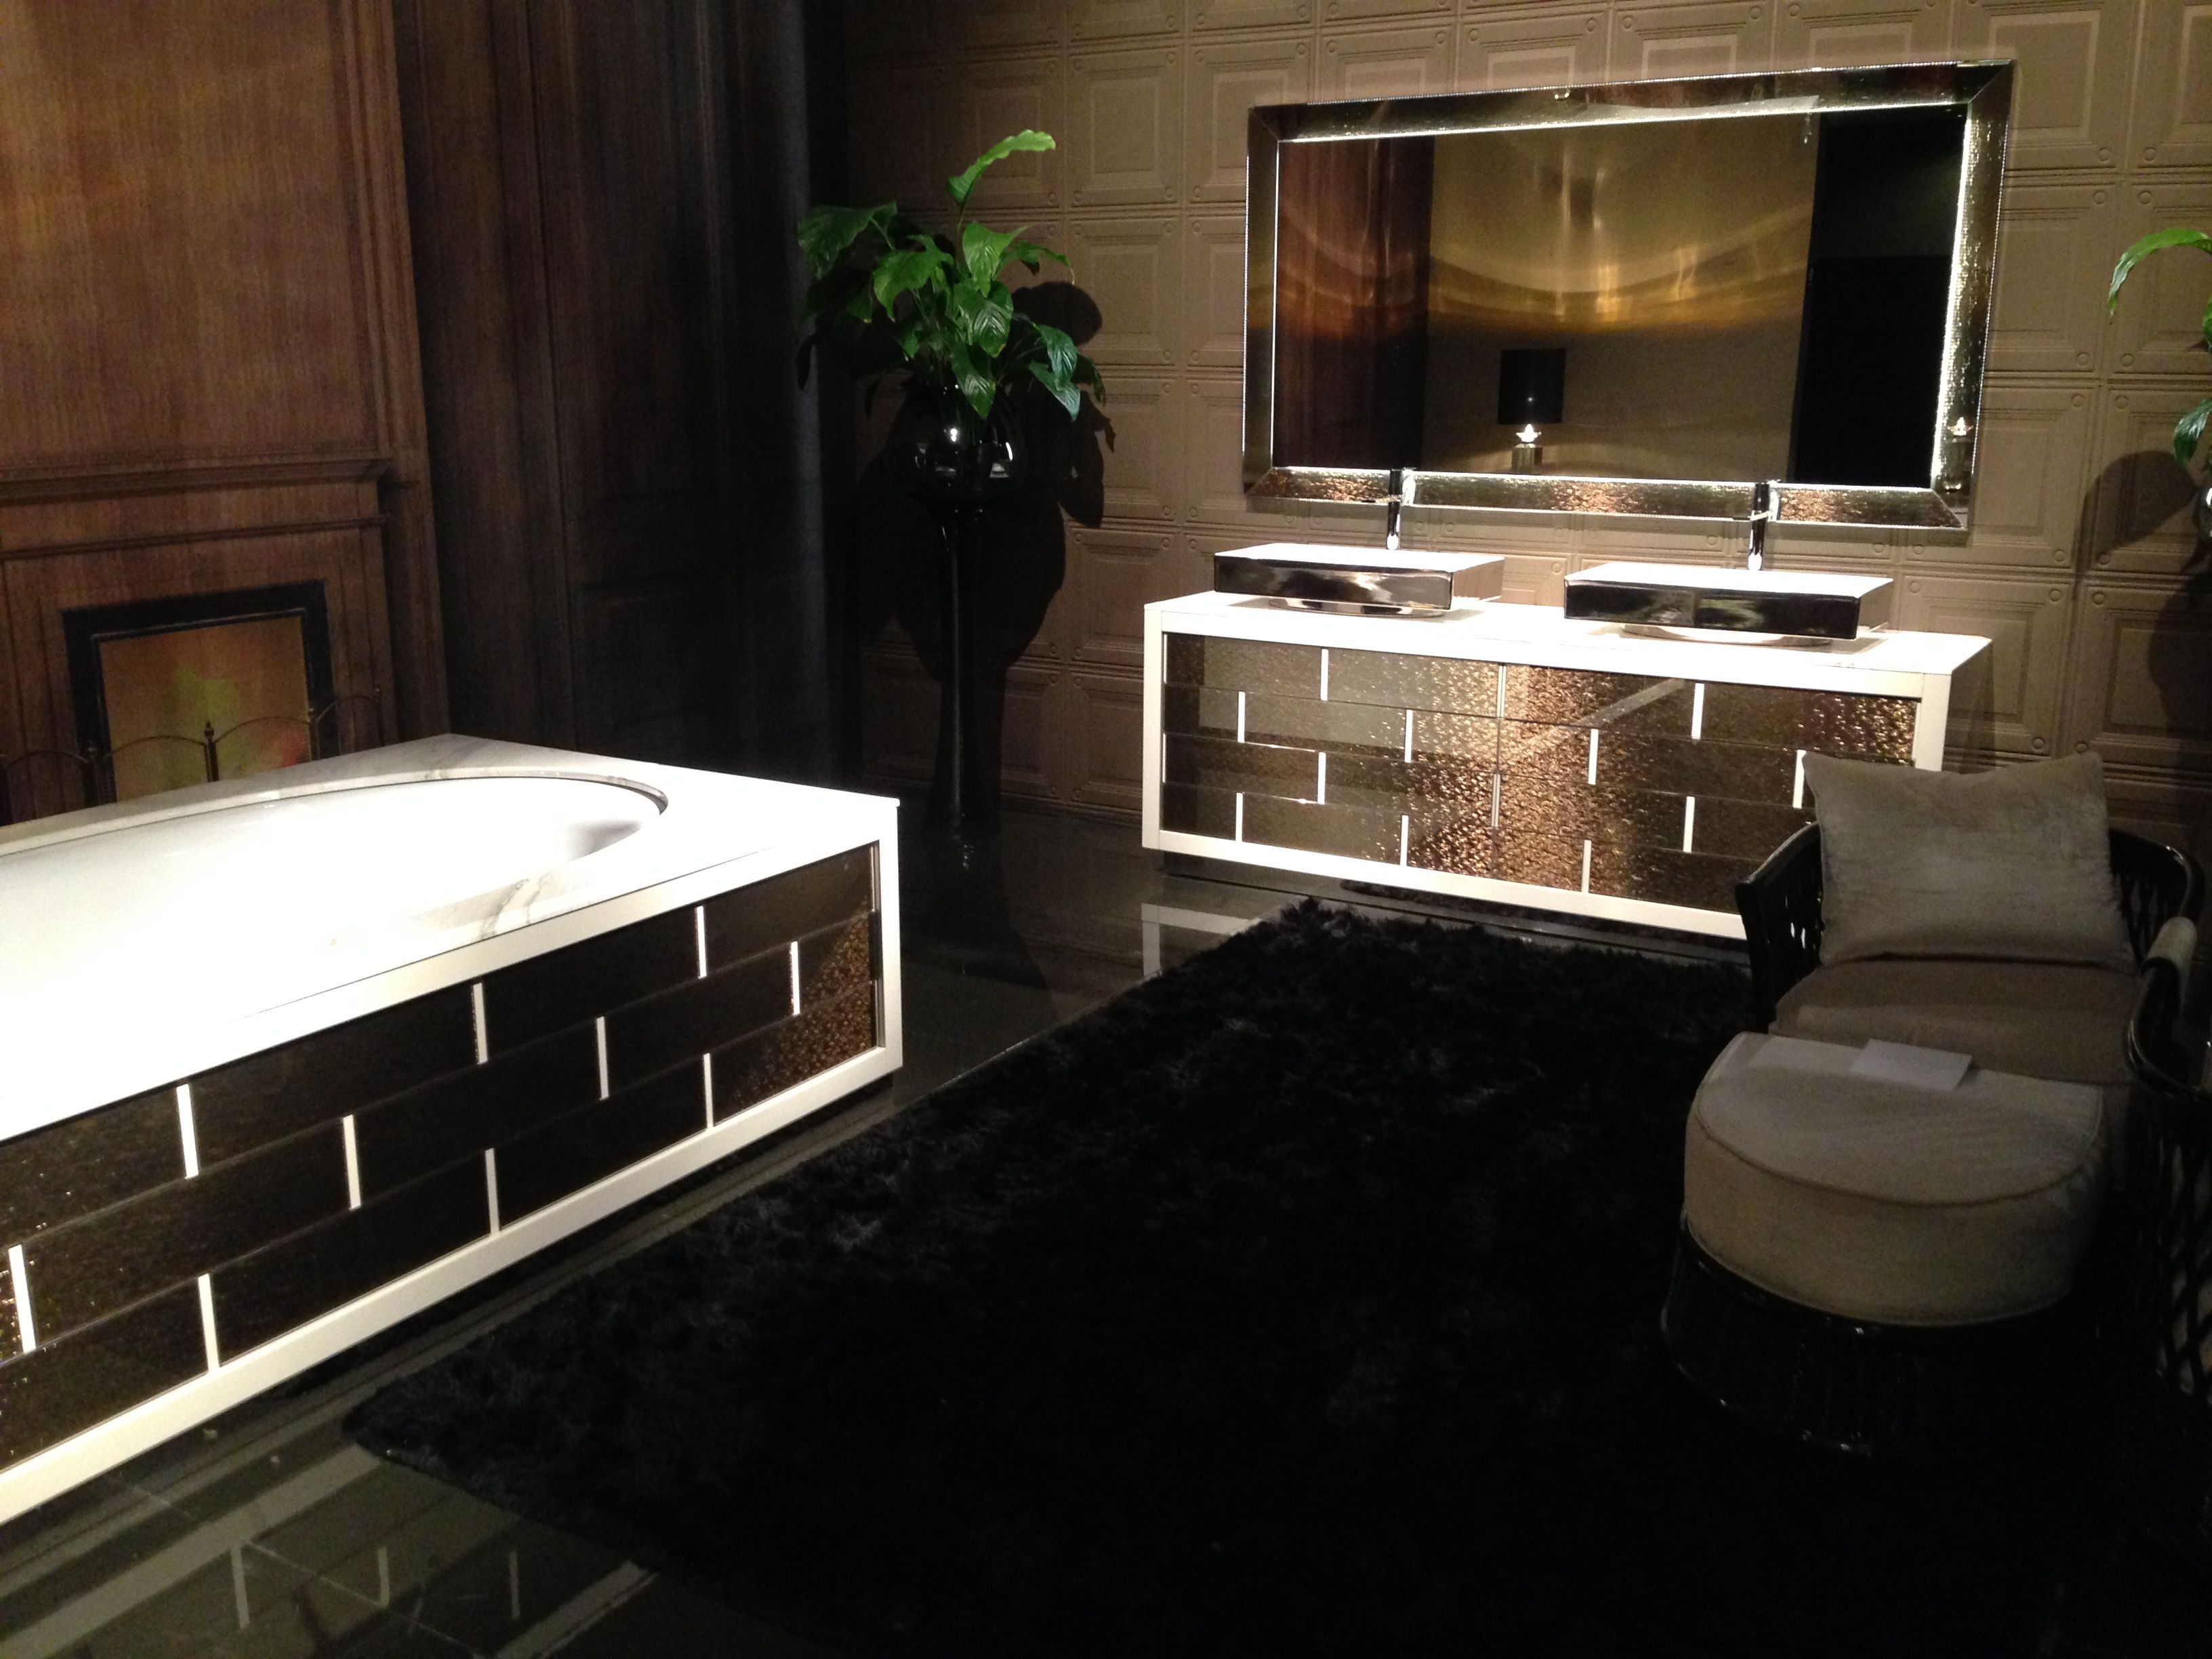 Luxury black bathroom decor - iSaloni 2014